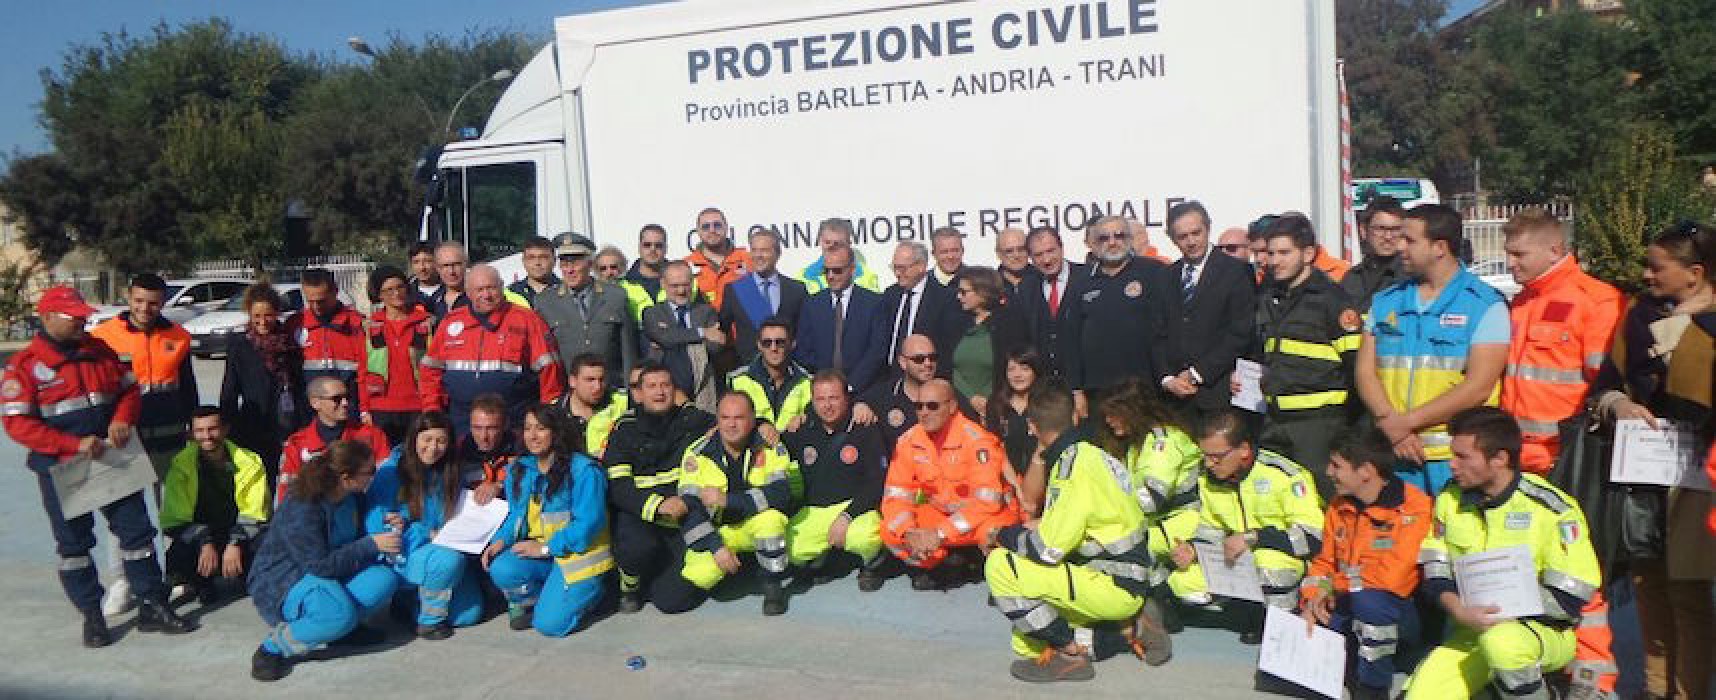 Protezione civile, il capo dipartimento Angelo Borrelli emana nuove disposizioni normative